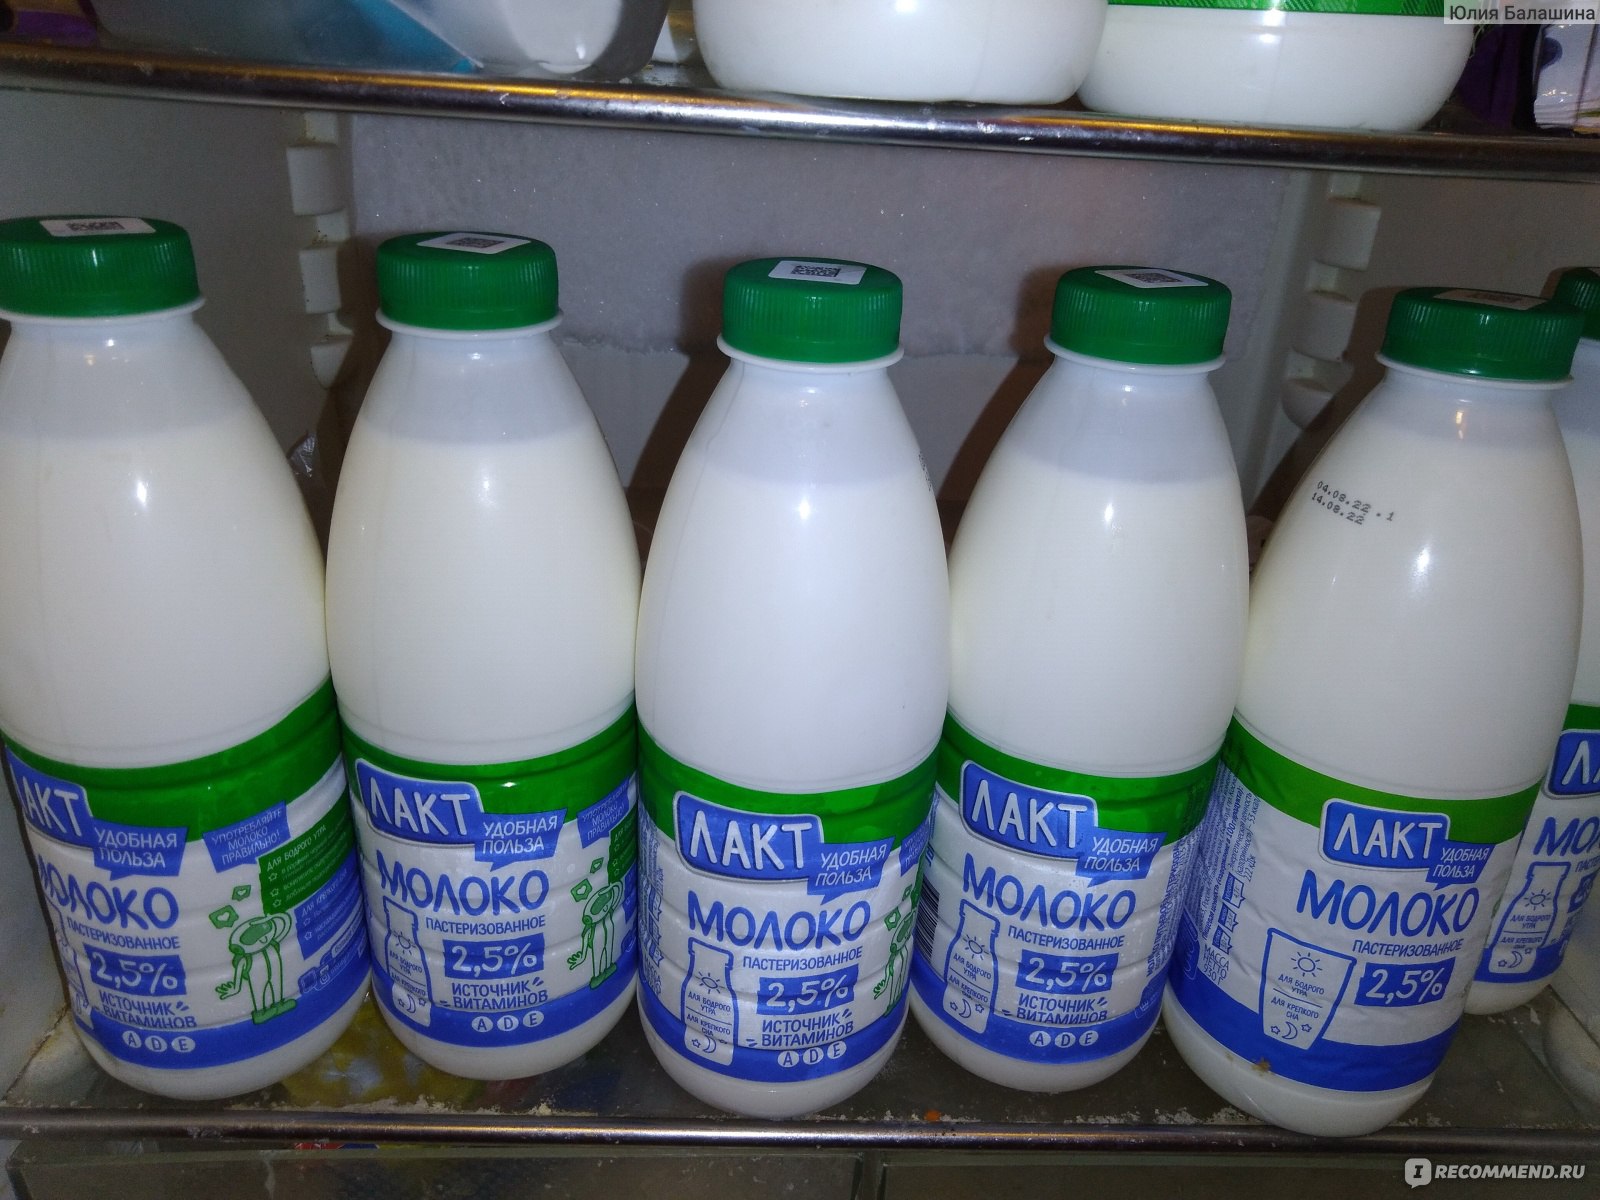 Молоко спасет в жару? Что рекомендуется пить для утоления жажды | Молочная промышленность